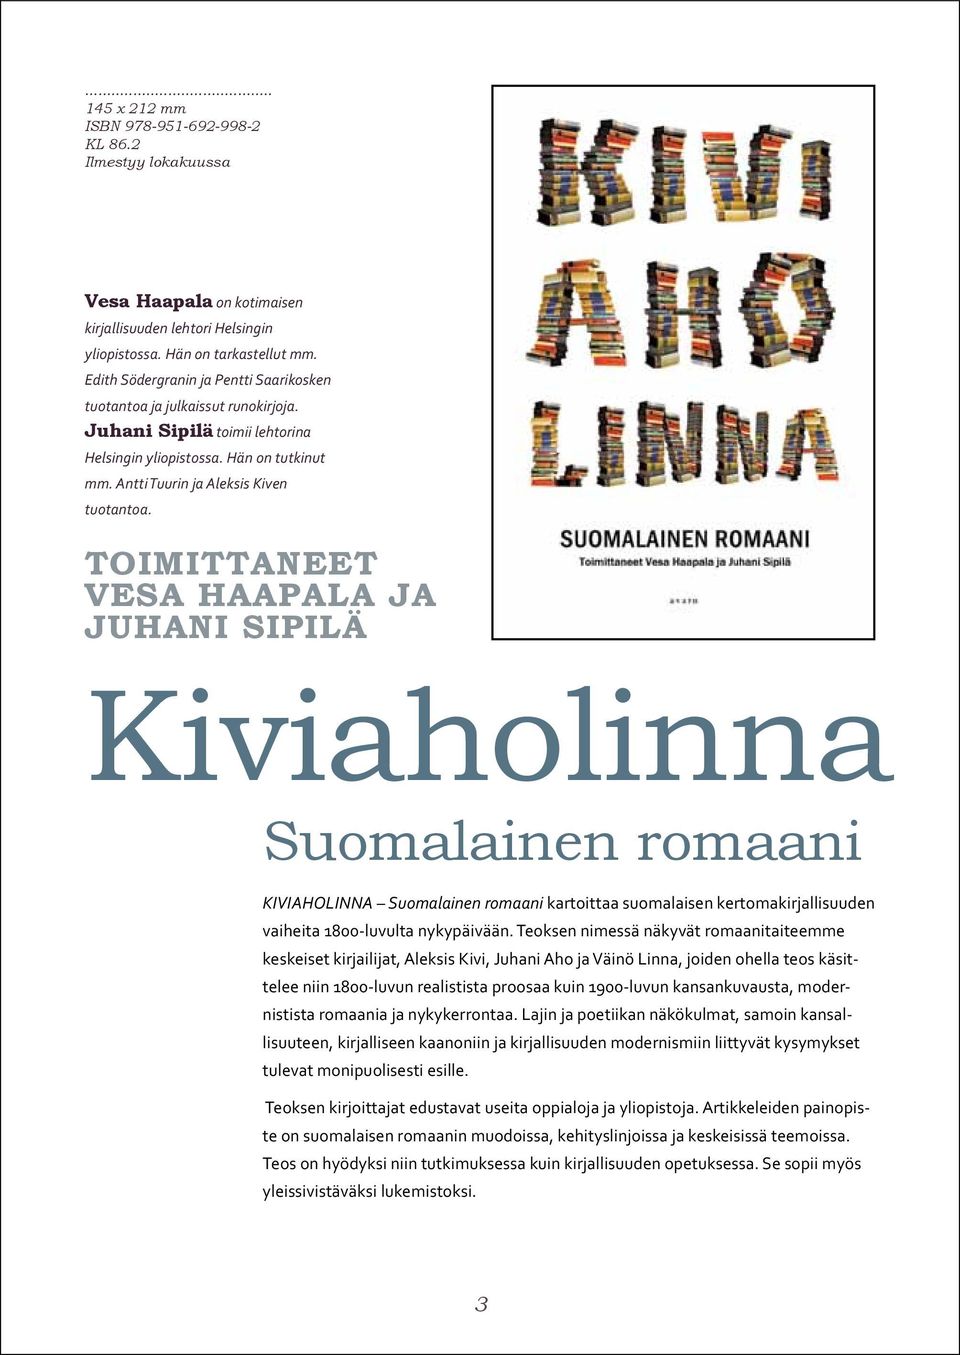 toimittaneet vesa haapala ja juhani sipilä Kiviaholinna Suomalainen romaani KIVIAHOLINNA Suomalainen romaani kartoittaa suomalaisen kertomakirjallisuuden vaiheita 1800-luvulta nykypäivään.